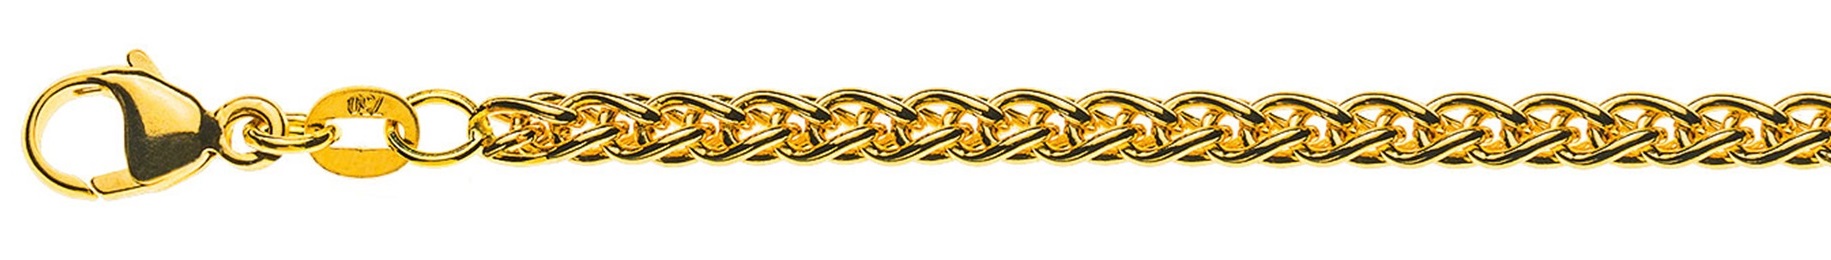 AURONOS Prestige Halskette Gelbgold 18K Zopfkette 45cm 3.3mm